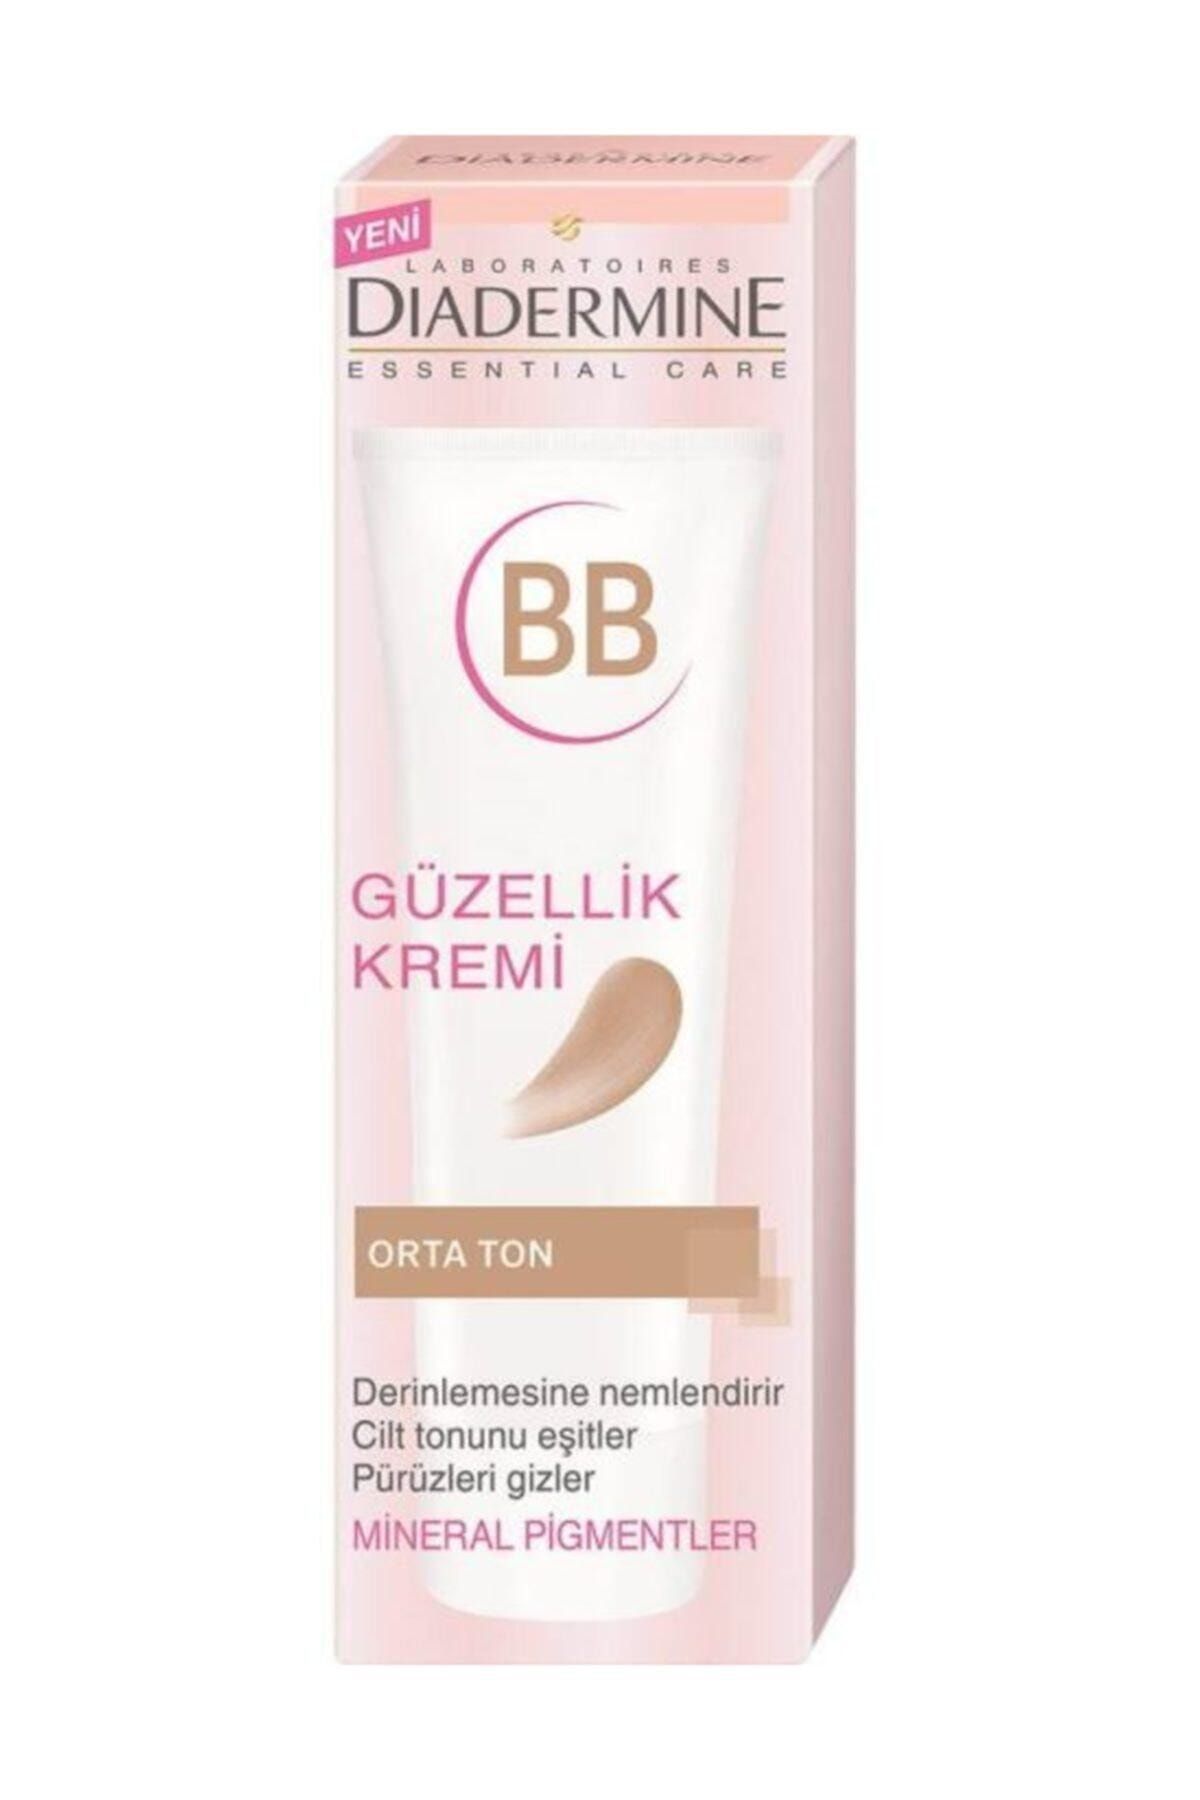 Diadermine Bb Krem - Essentials Orta Ton 50 Ml